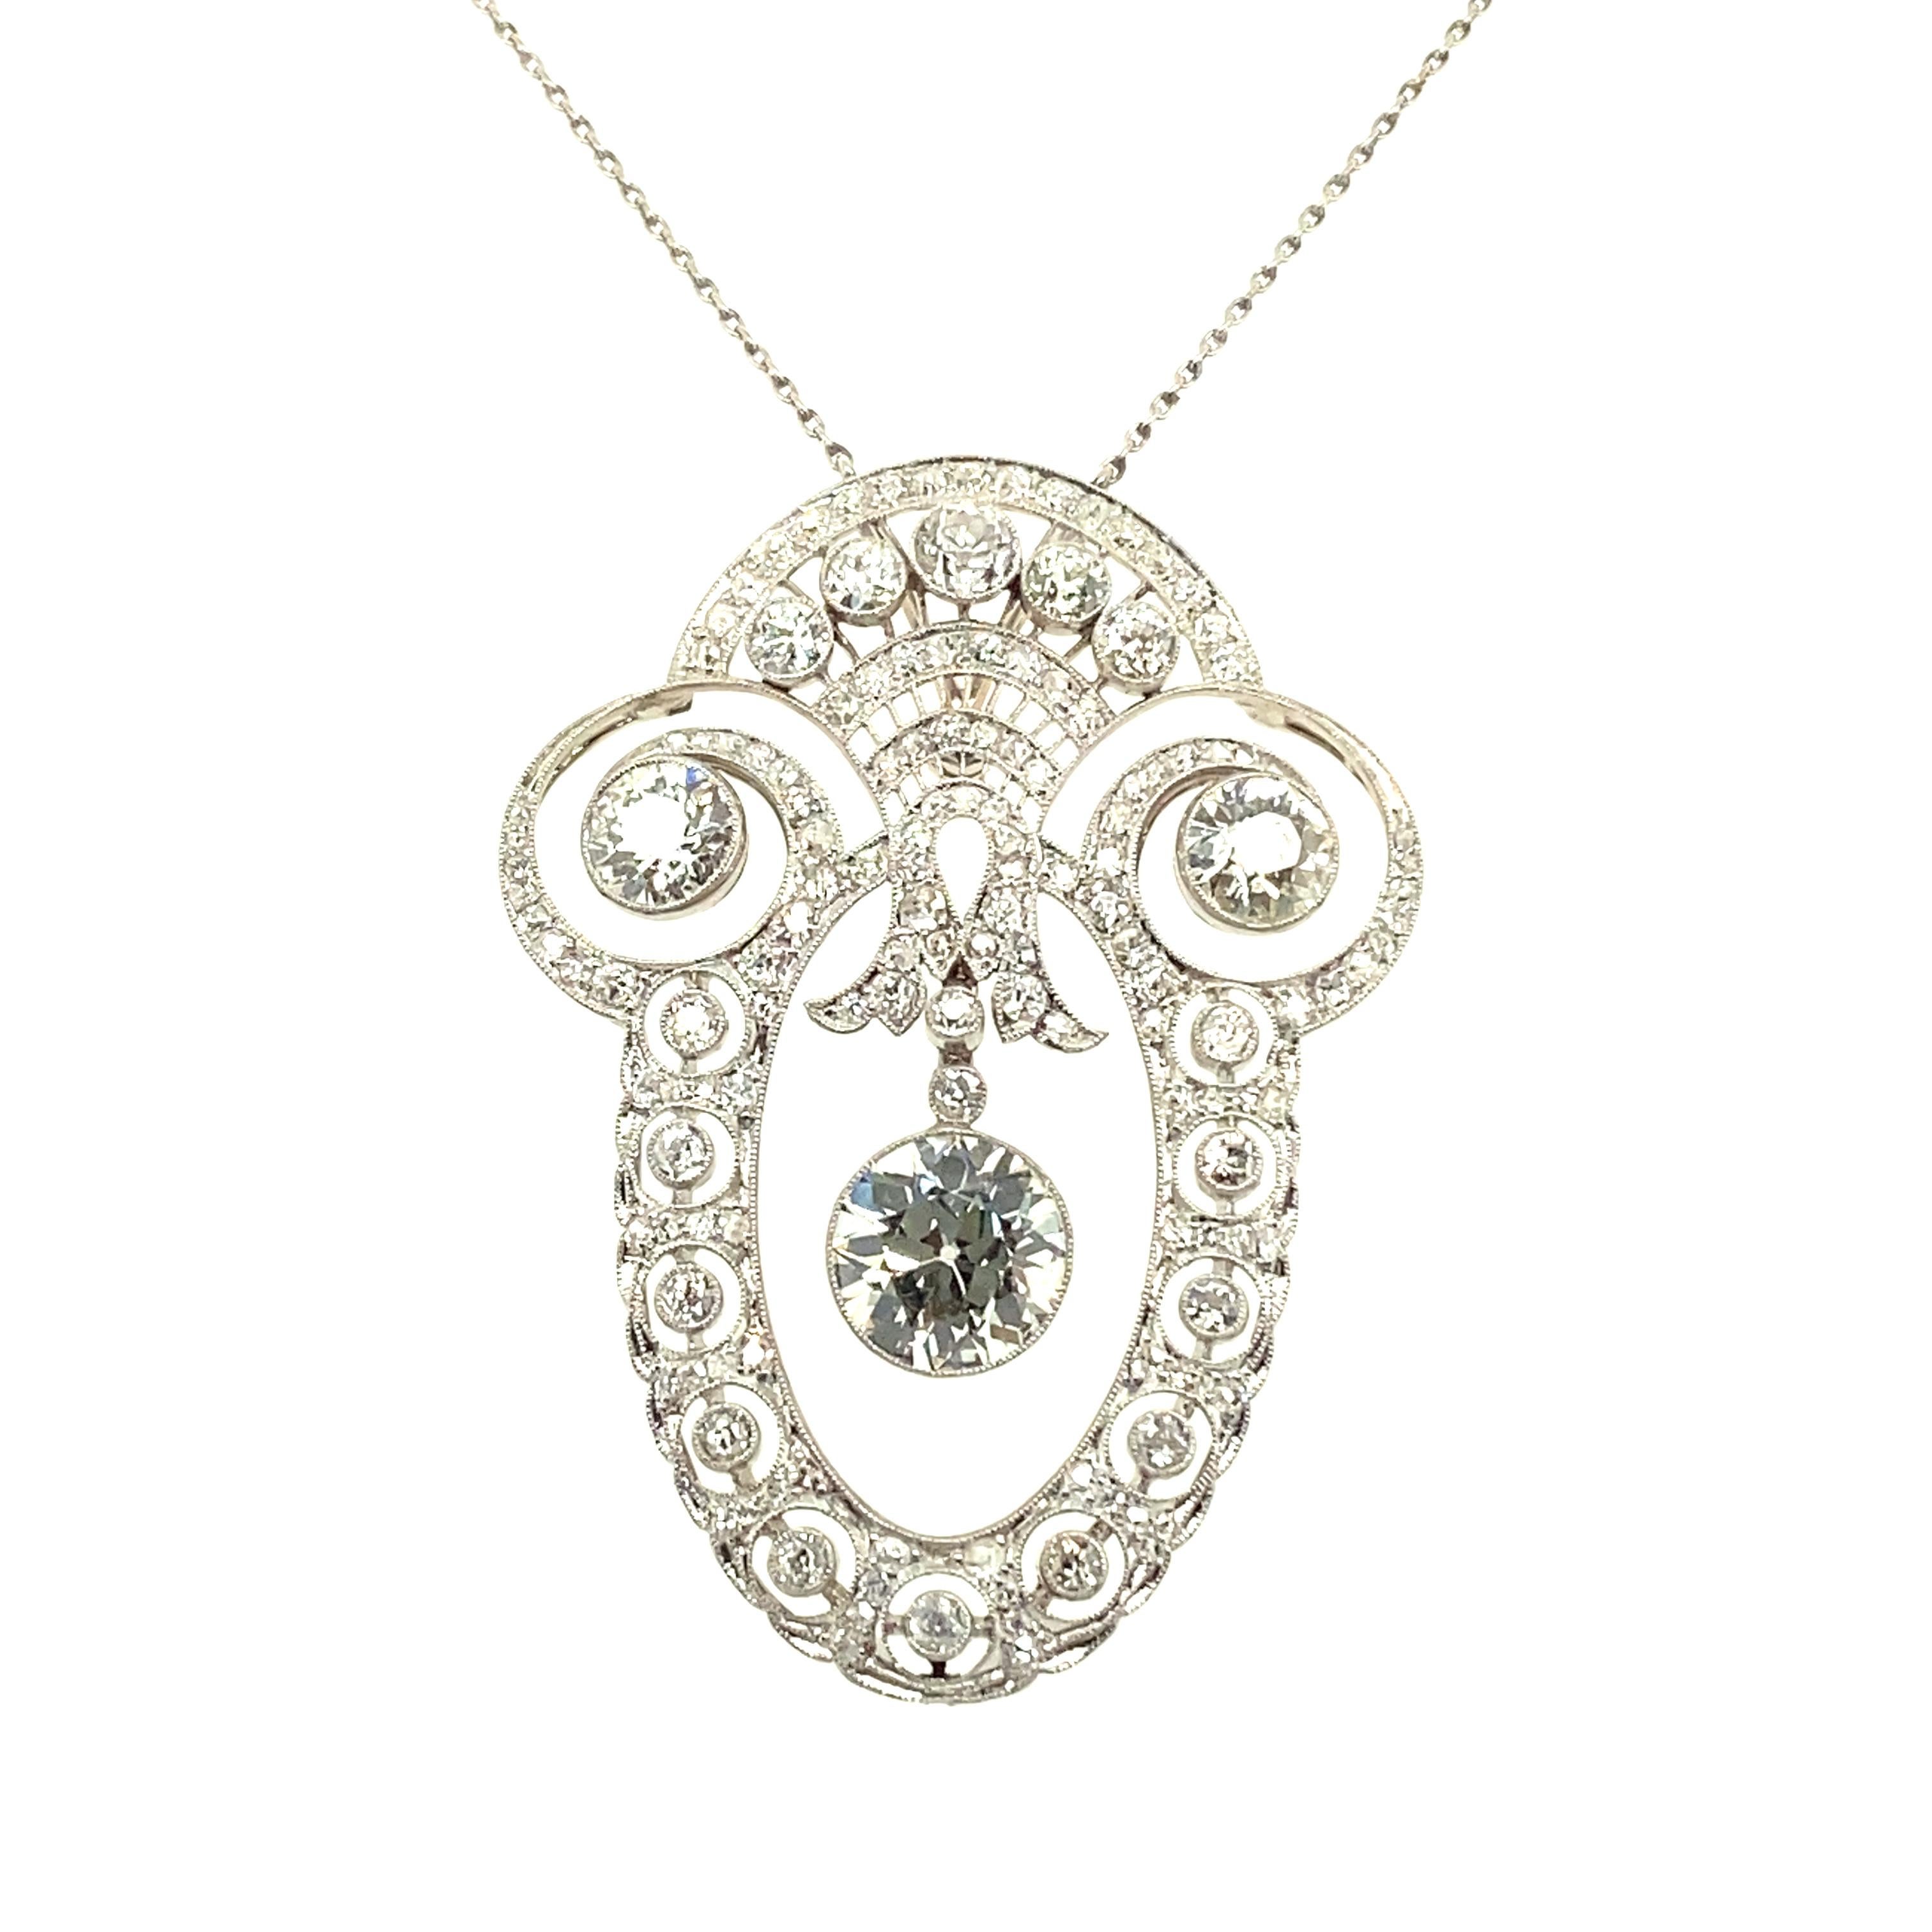 Ce superbe collier de diamants du début du XXe siècle de l'époque édouardienne est délicatement réalisé à la main en platine 950.
Les progrès techniques de l'époque permettent de traiter le platine à des fins de bijouterie, et les diamants sont